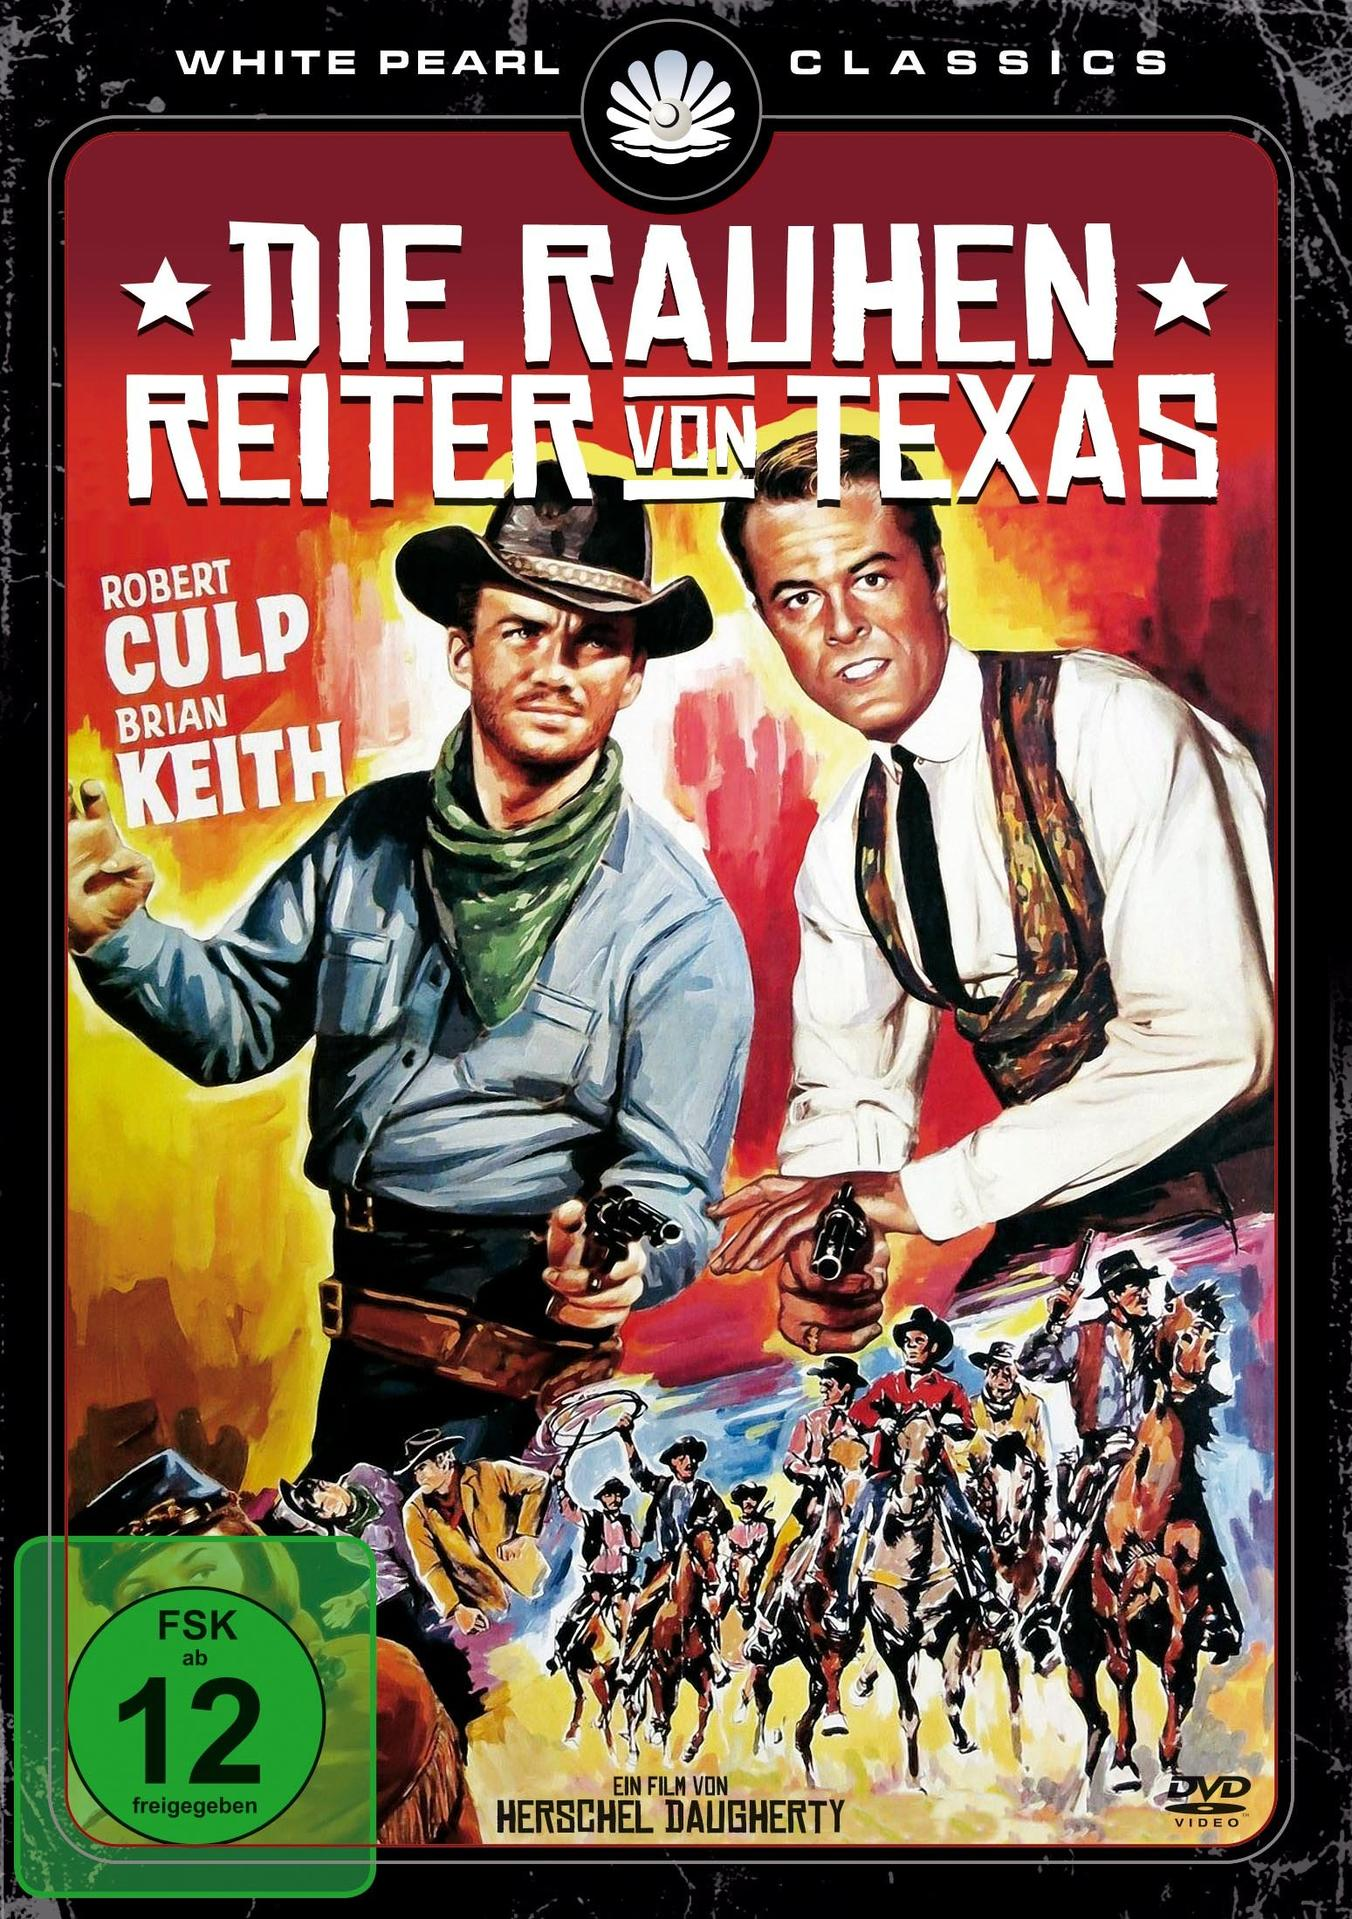 Reiter Texas Desperados, Rauhen Texas Von DVD Die